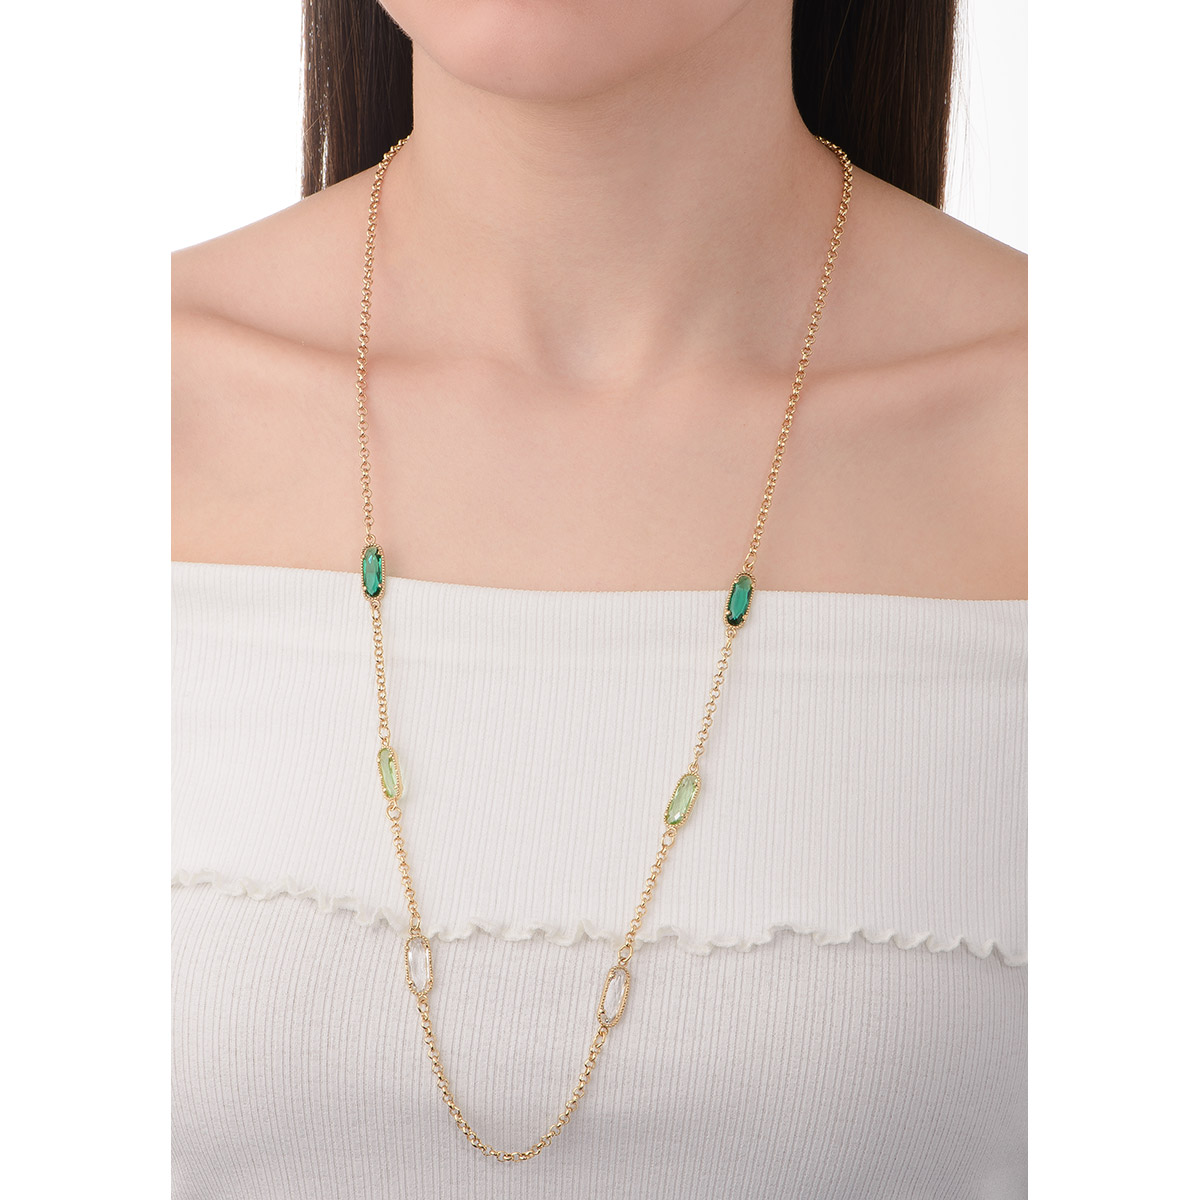 Collar de 80 cm + 10 cm ext, en baño de oro, con piedras en tono esmeralda, verde claro y cristal.